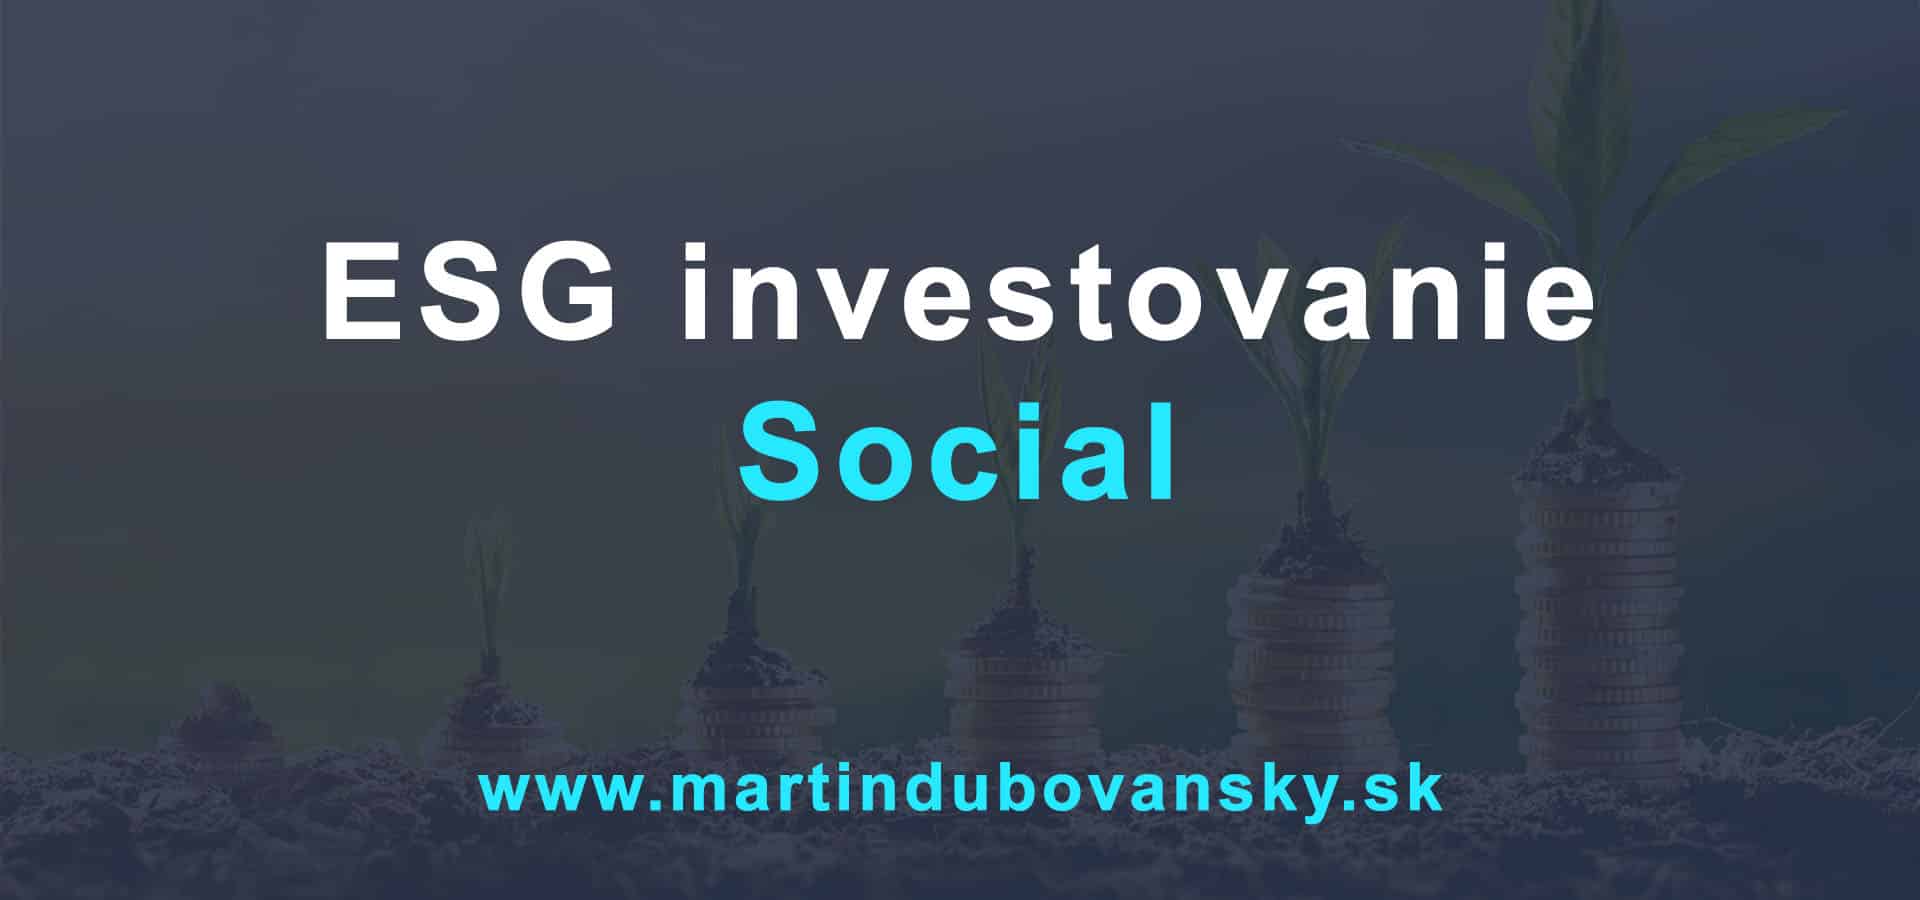 Investovanie do ESG social